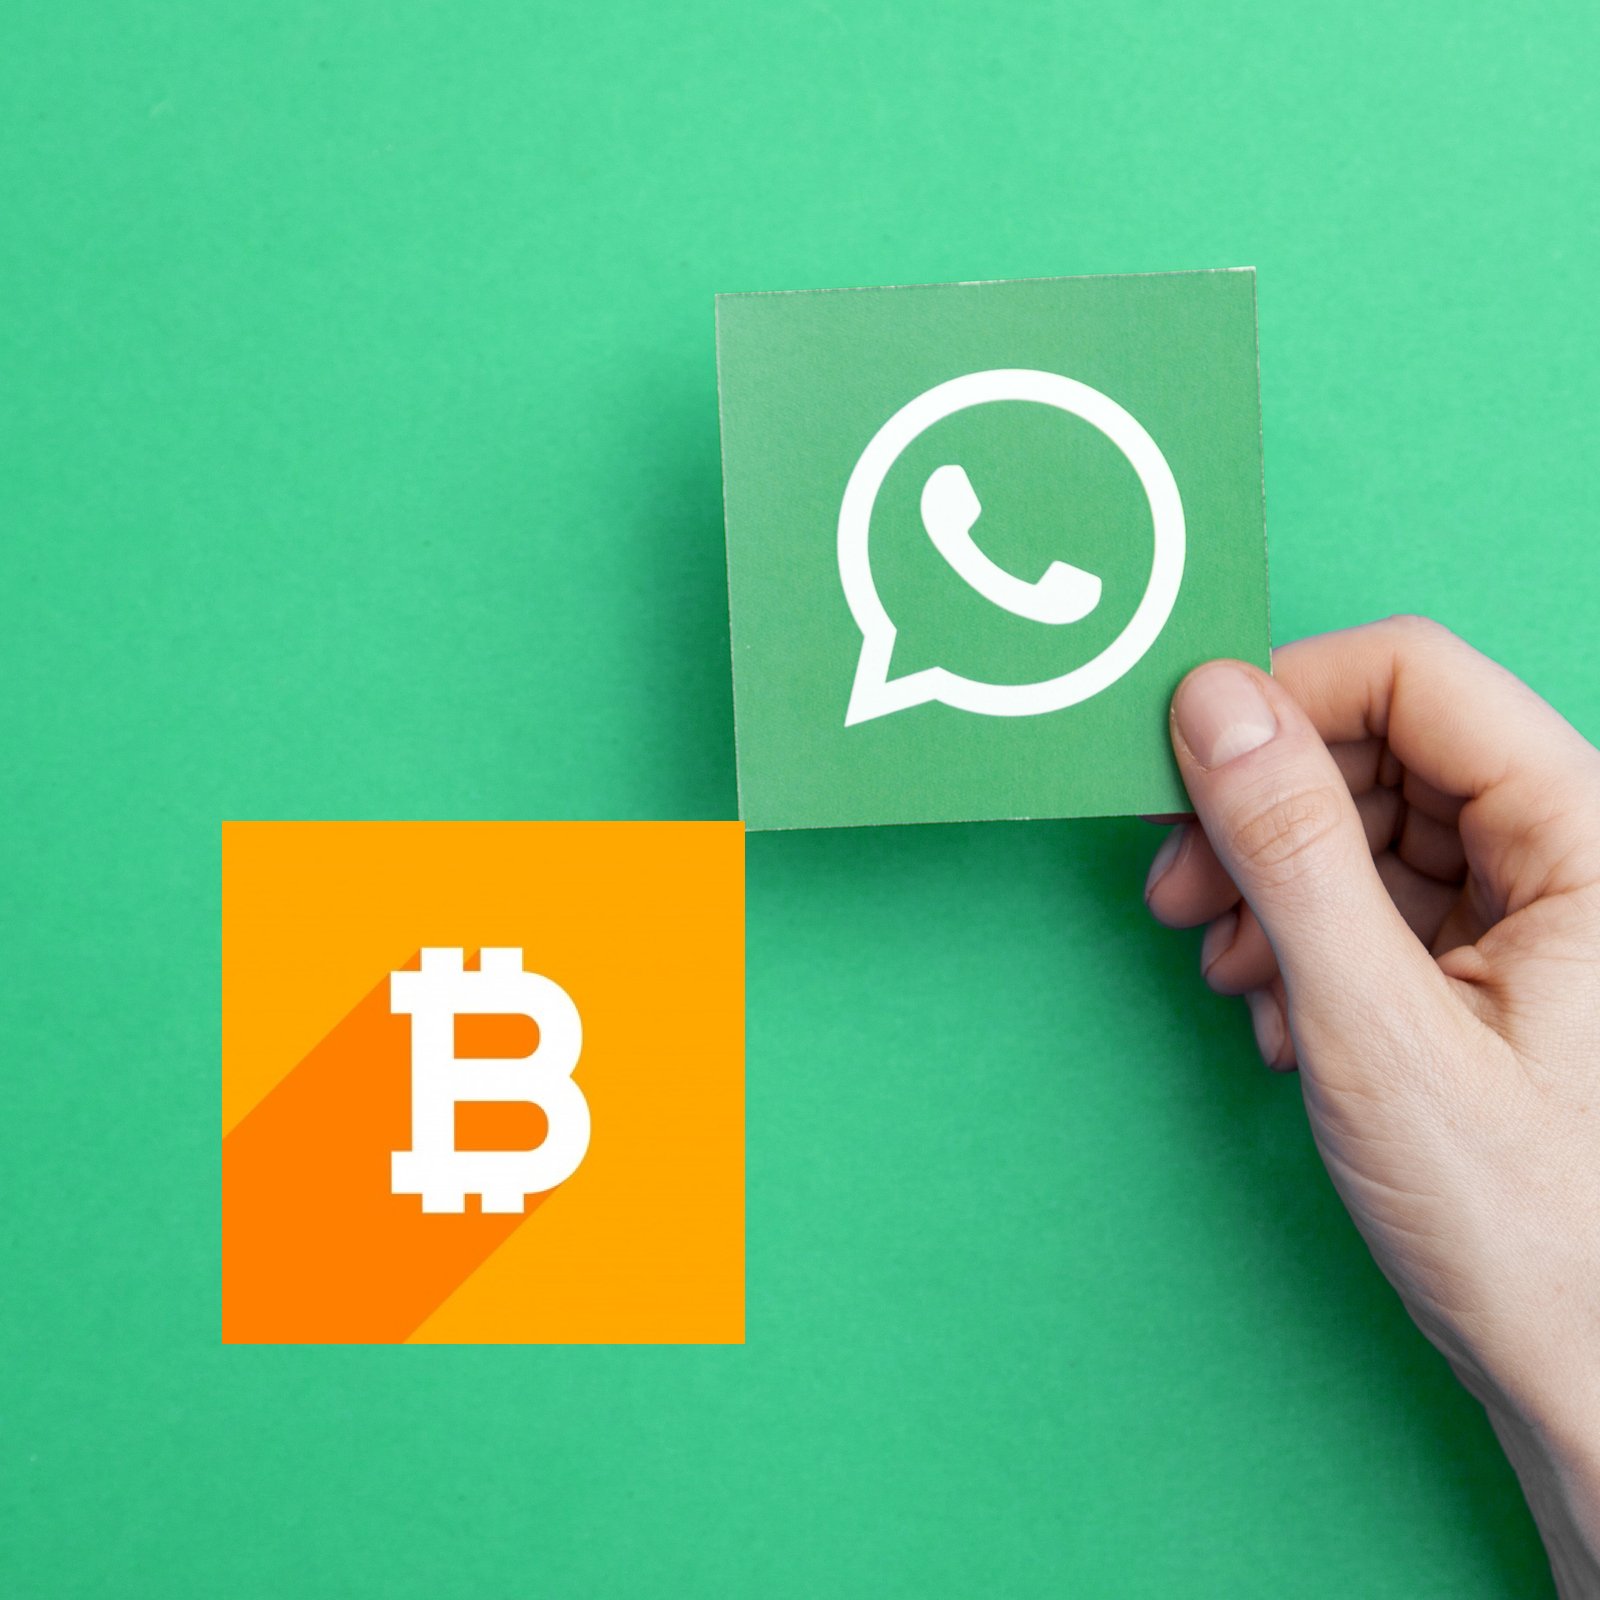 grupo whatsapp trader bitcoin è uno schema bitcoin